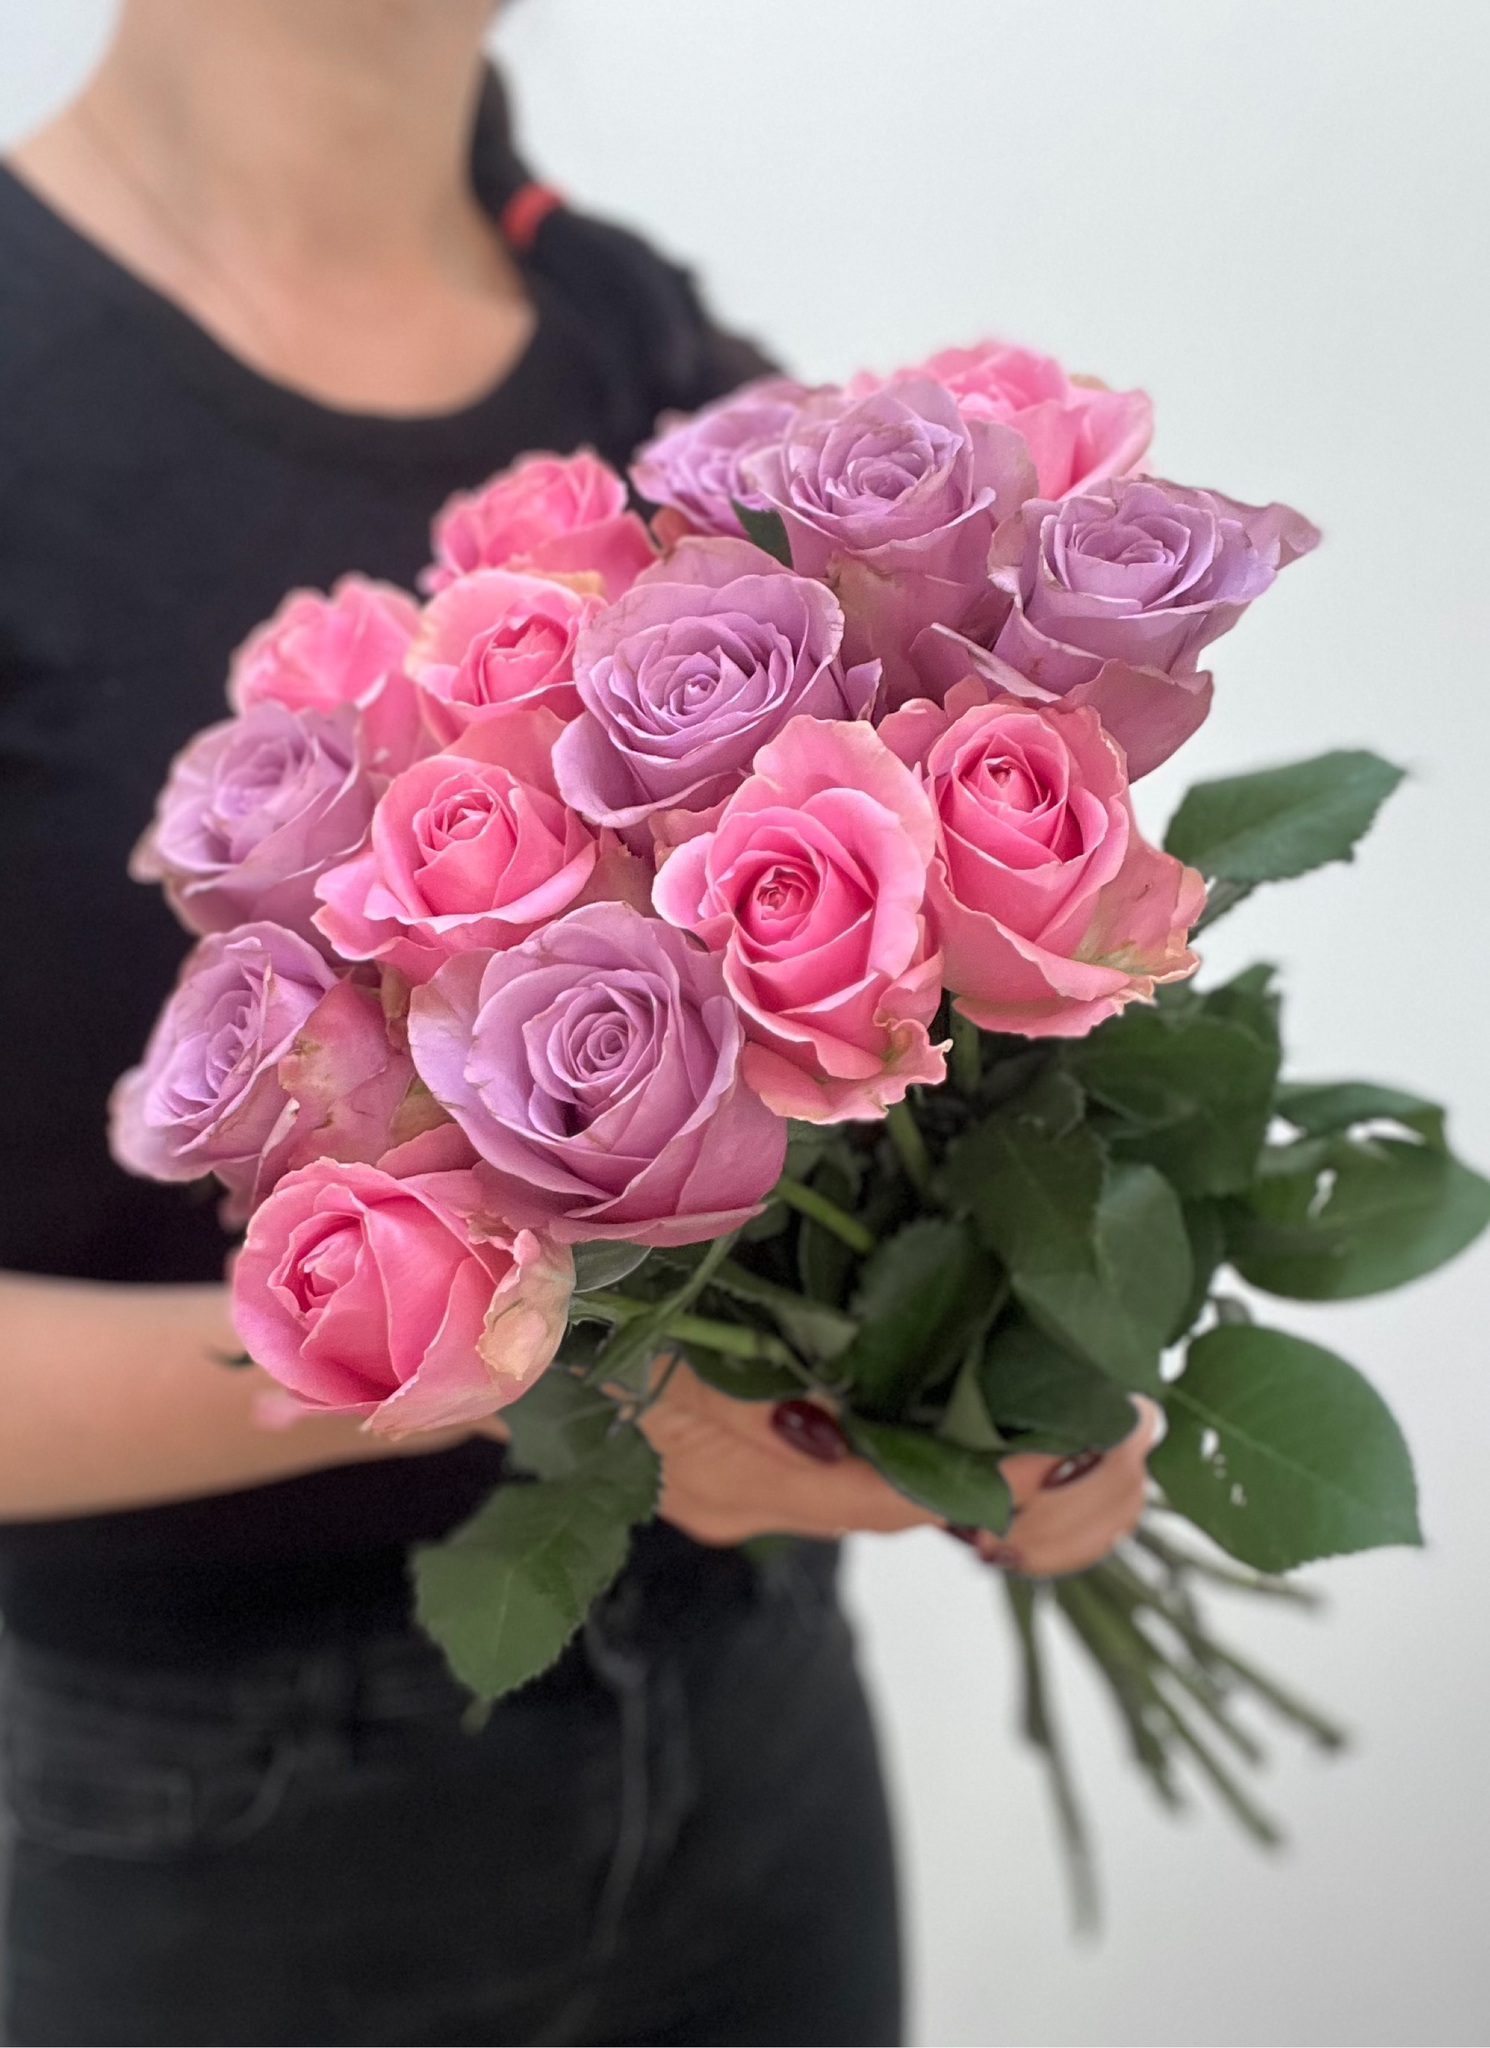 Букет из сиреневых и розовых роз